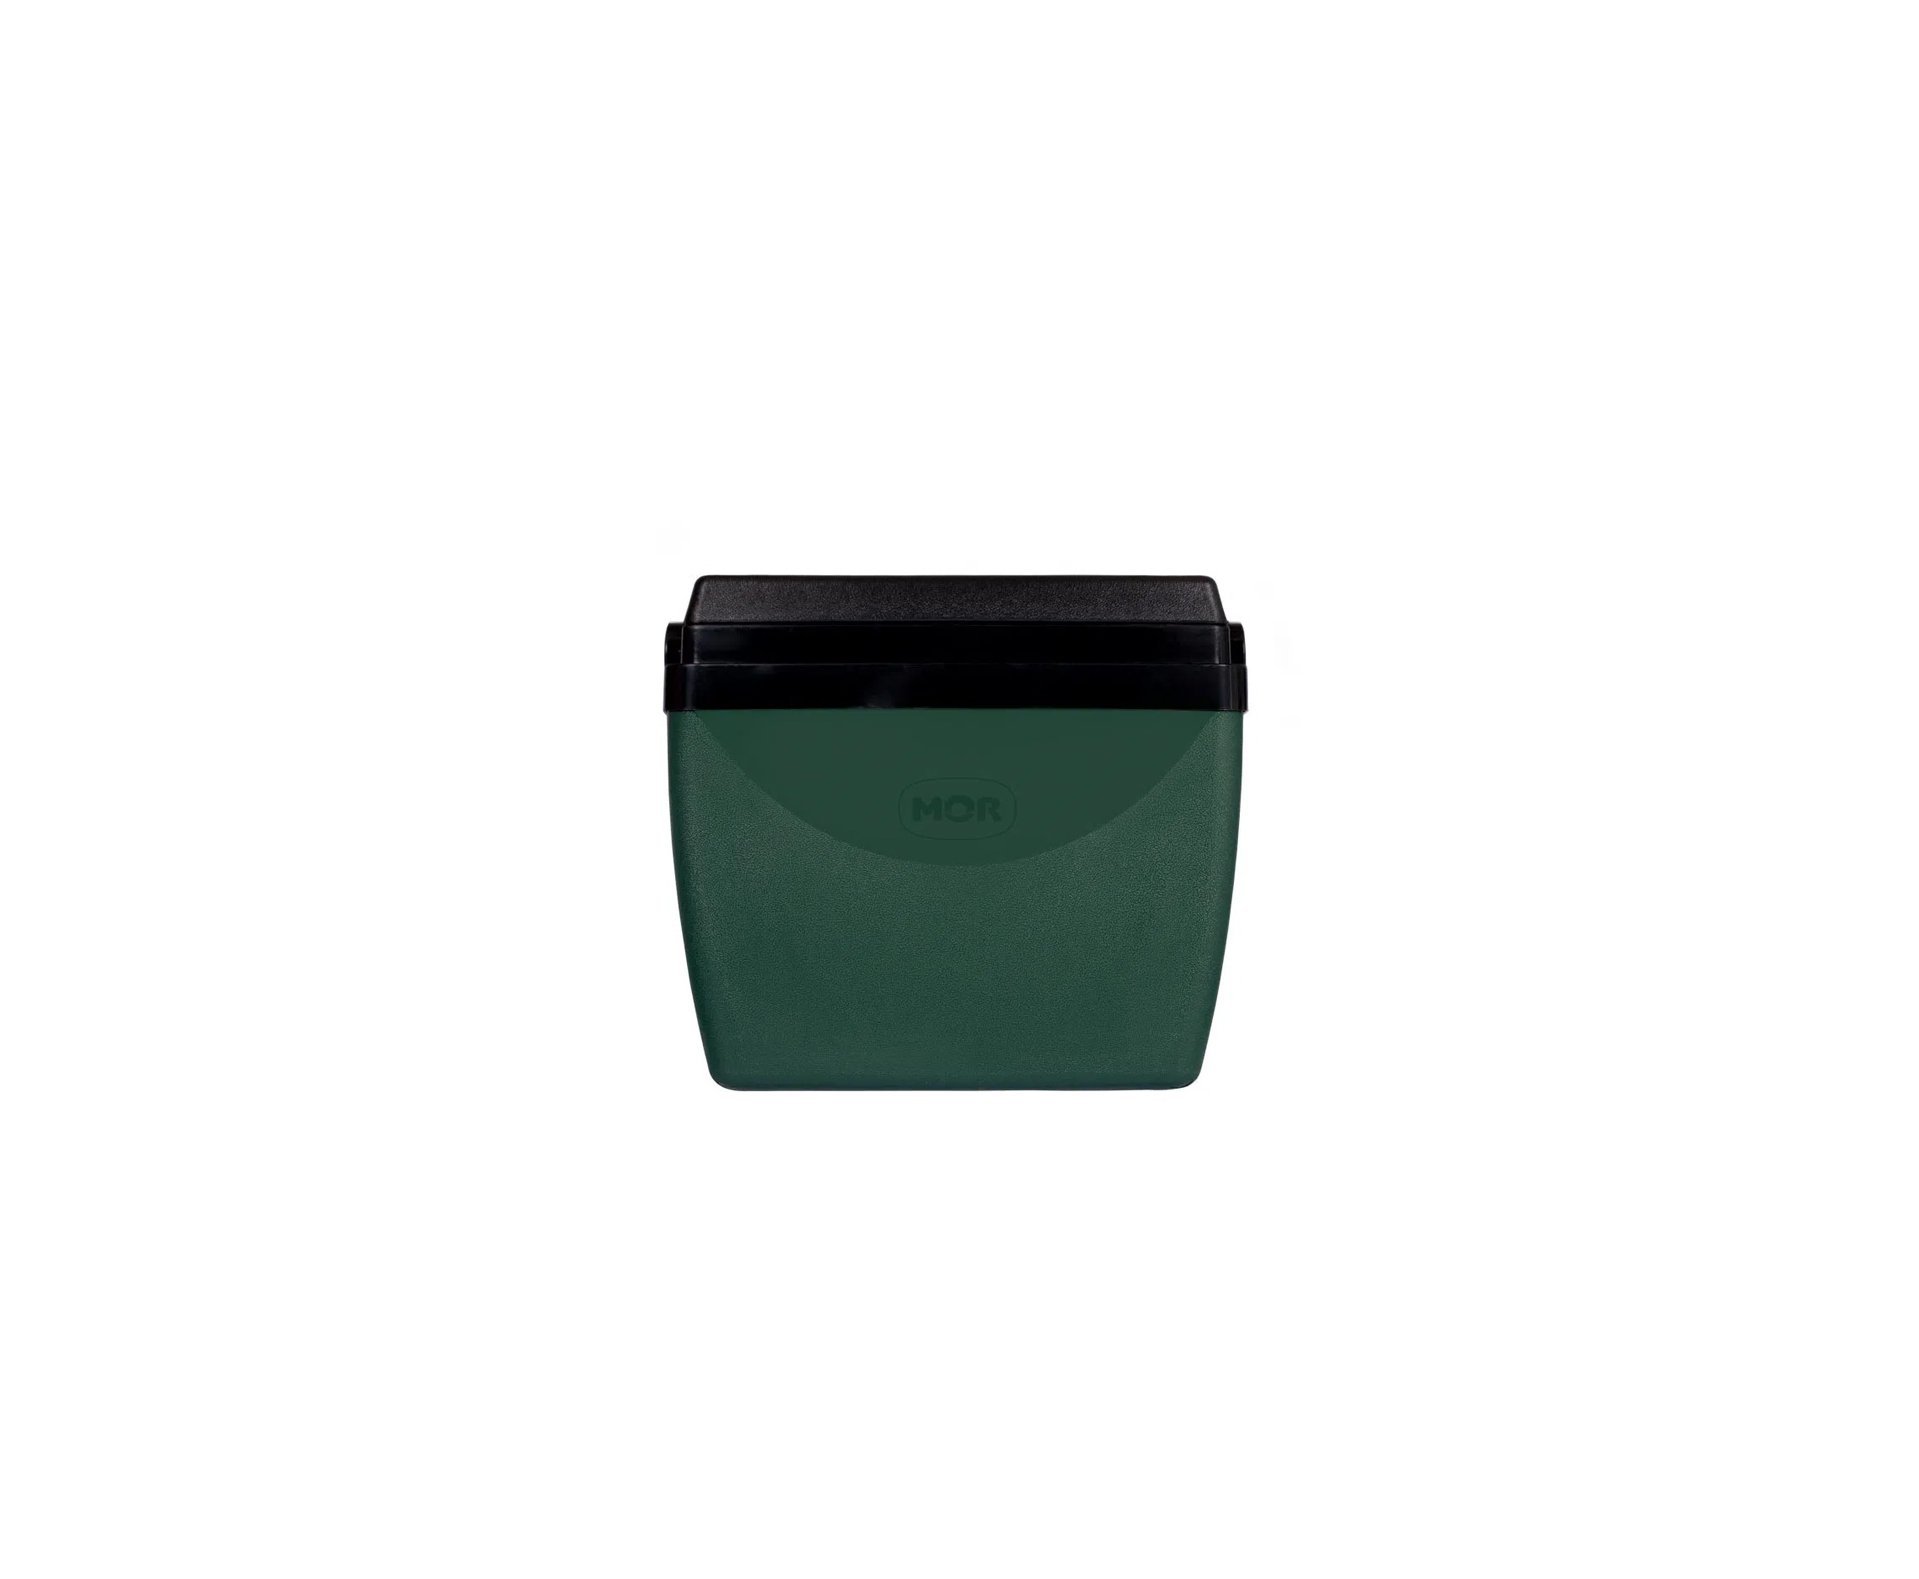 Caixa Térmica Glacial Mor 34 Litros Verde Escuro - material 100% virgem e atóxico